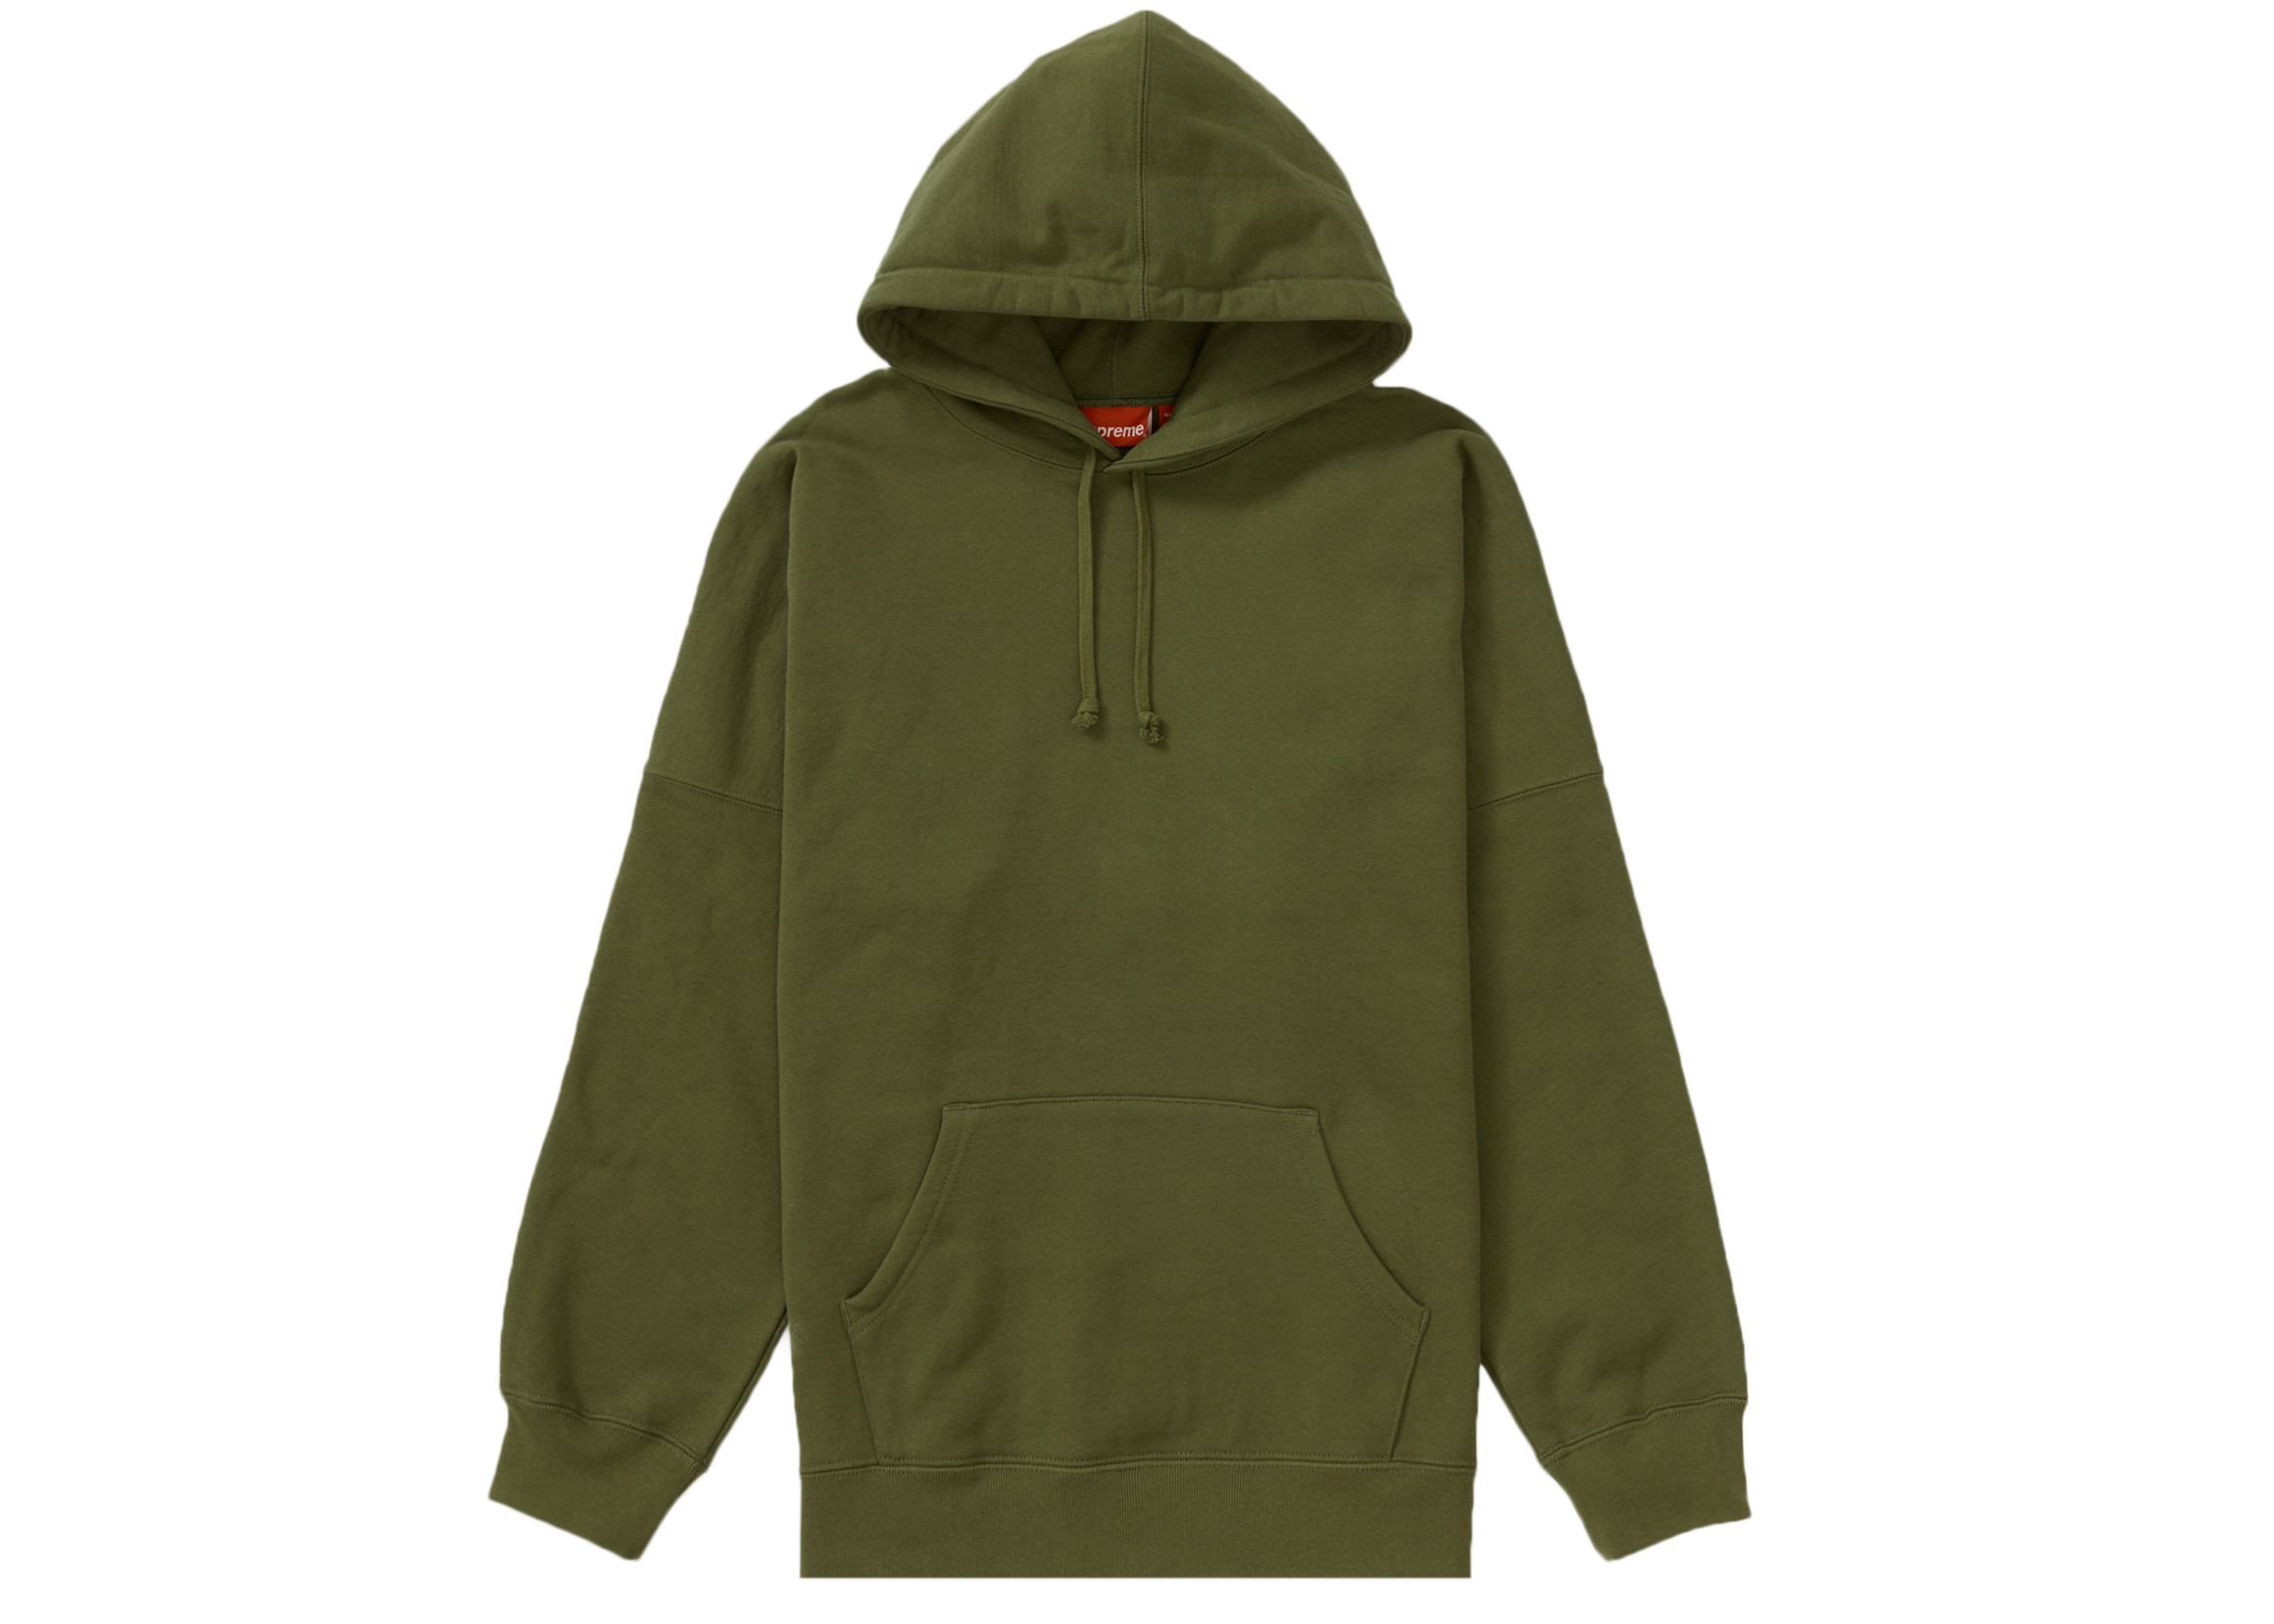 Supreme Beaded Hooded Sweatshirt (SS23) Brown